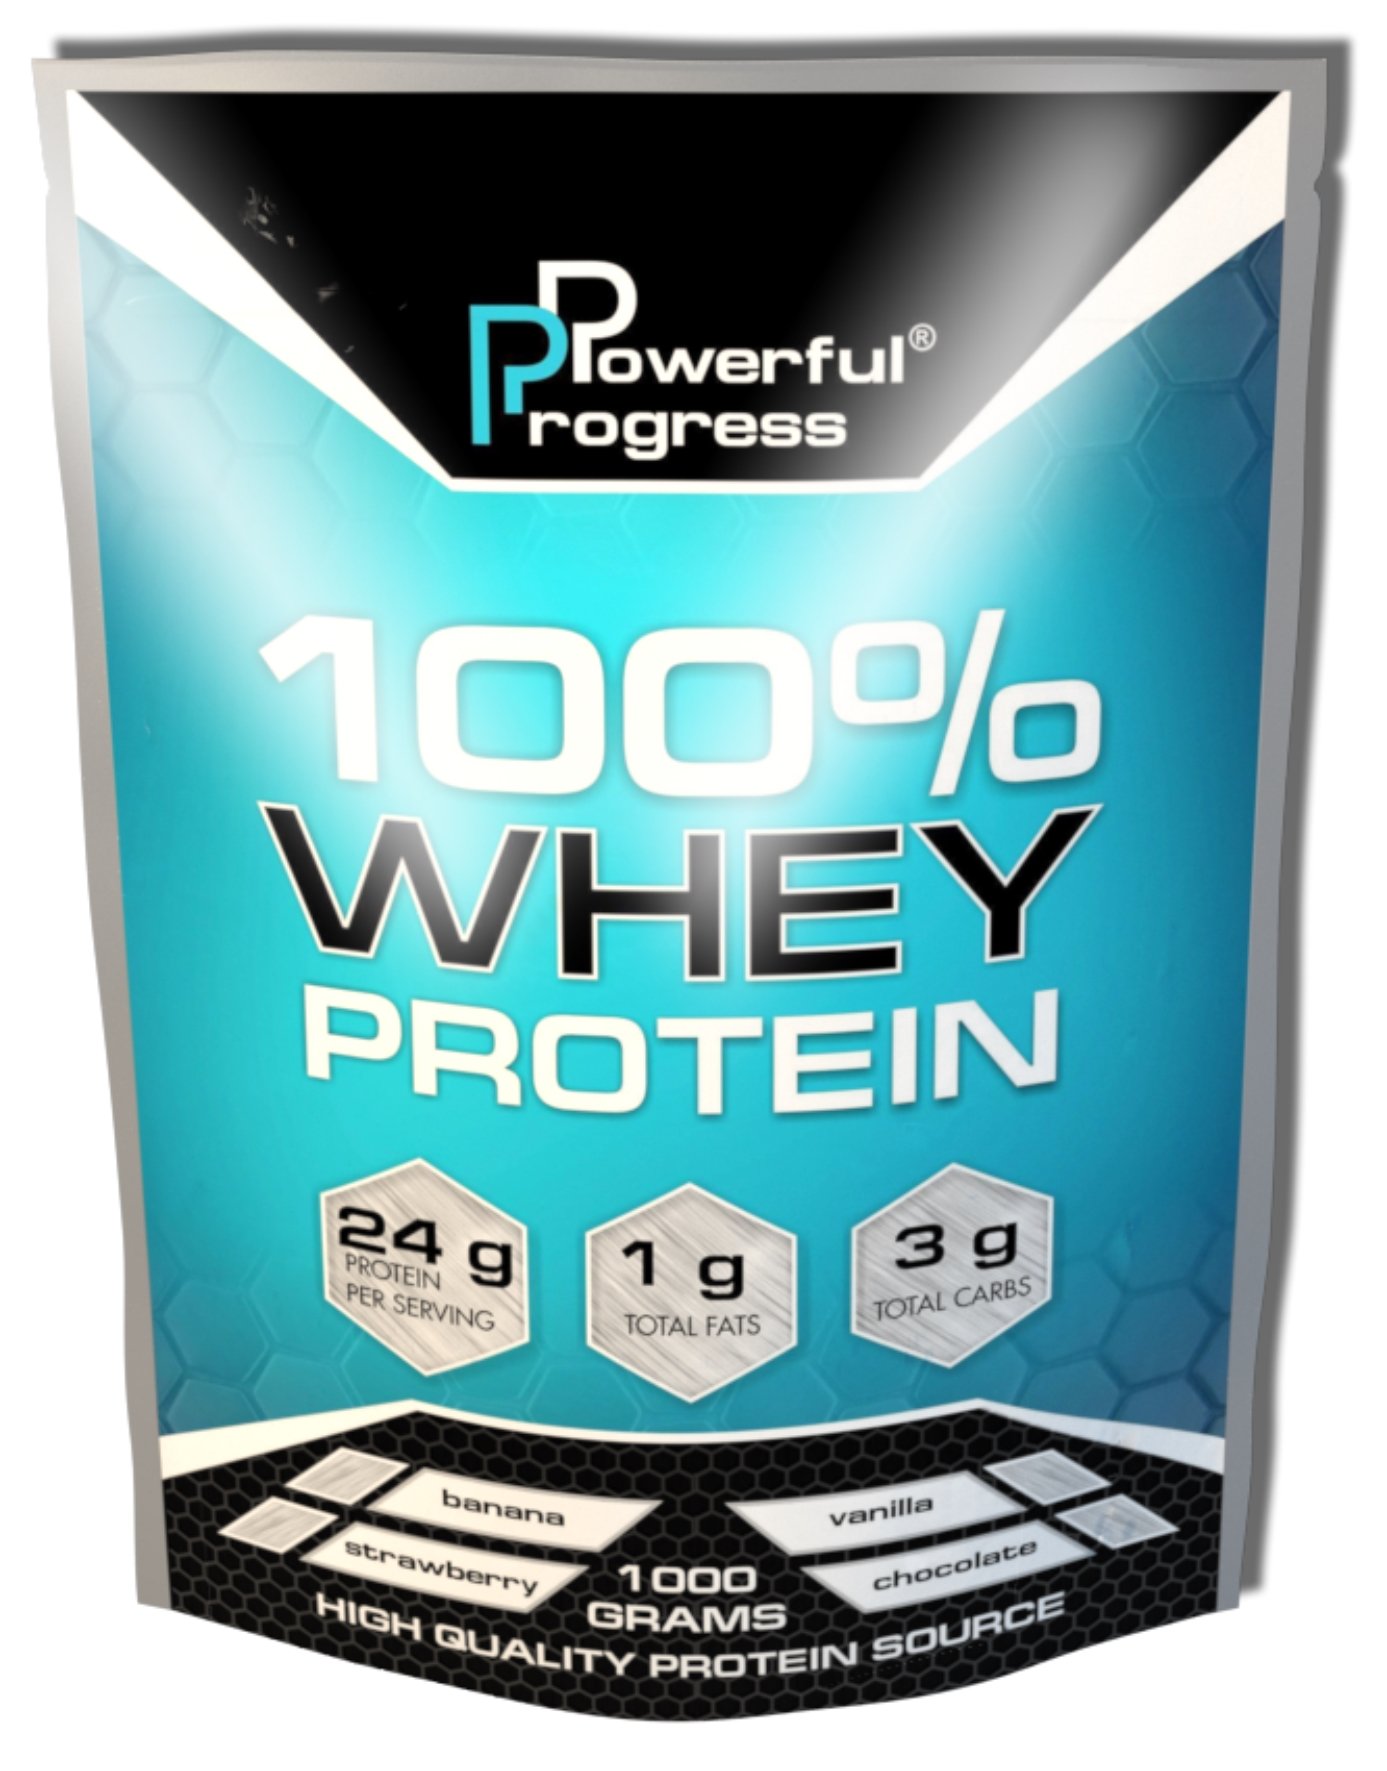 100% Whey Protein, 1000 g, Powerful Progress. Proteína de suero de leche. recuperación Anti-catabolic properties Lean muscle mass 